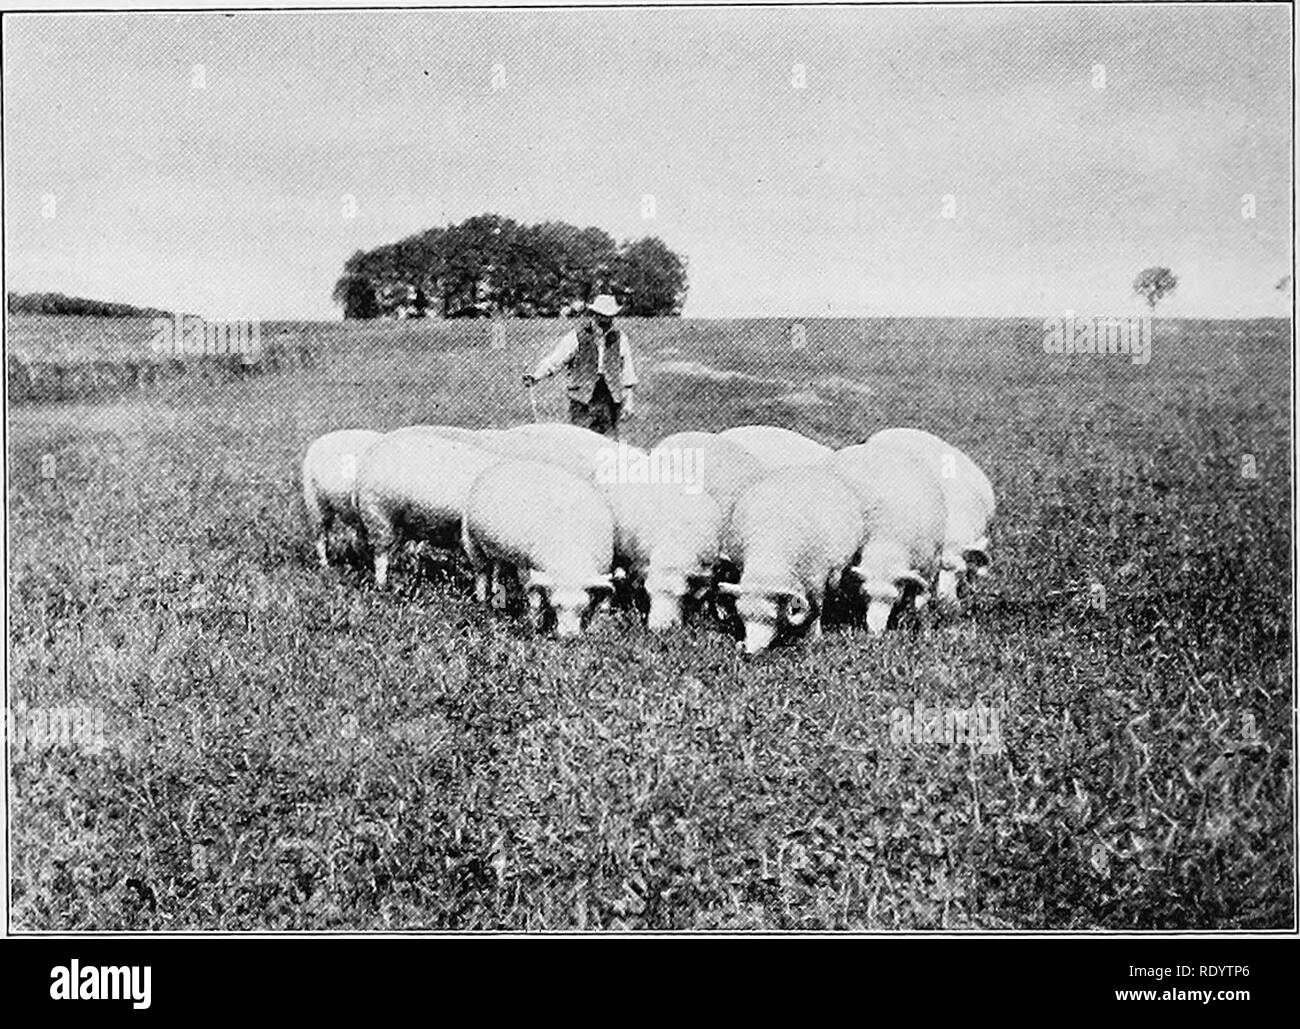 . Types et races d'animaux de ferme. Le bétail. 592 moutons Merino de grande qualité, spacieux et d'une brebis mérinos blocky, Dorset vigoureuse s'avérera ram un éleveur plus sûr, si possible, que la brebis Dorset de race pure. Il n'y a pas beaucoup de cultivateurs de sex- chambre agneaux qui ne le souhaitez Dorset Horn notes de Merino foundation à tout autre, le pas de race pure de l'exception. Ces brebis sont encore produites de pure race Dorset Horn béliers, et le résultat est un très pixellisée, agneau engraissé facilement. Ces élèves de brebis sont également mieux que le lait-breds pure. À l'Université de Purdue. Fig. 277. Choix d'un groupe de brebis Dorset Horn sur p Banque D'Images